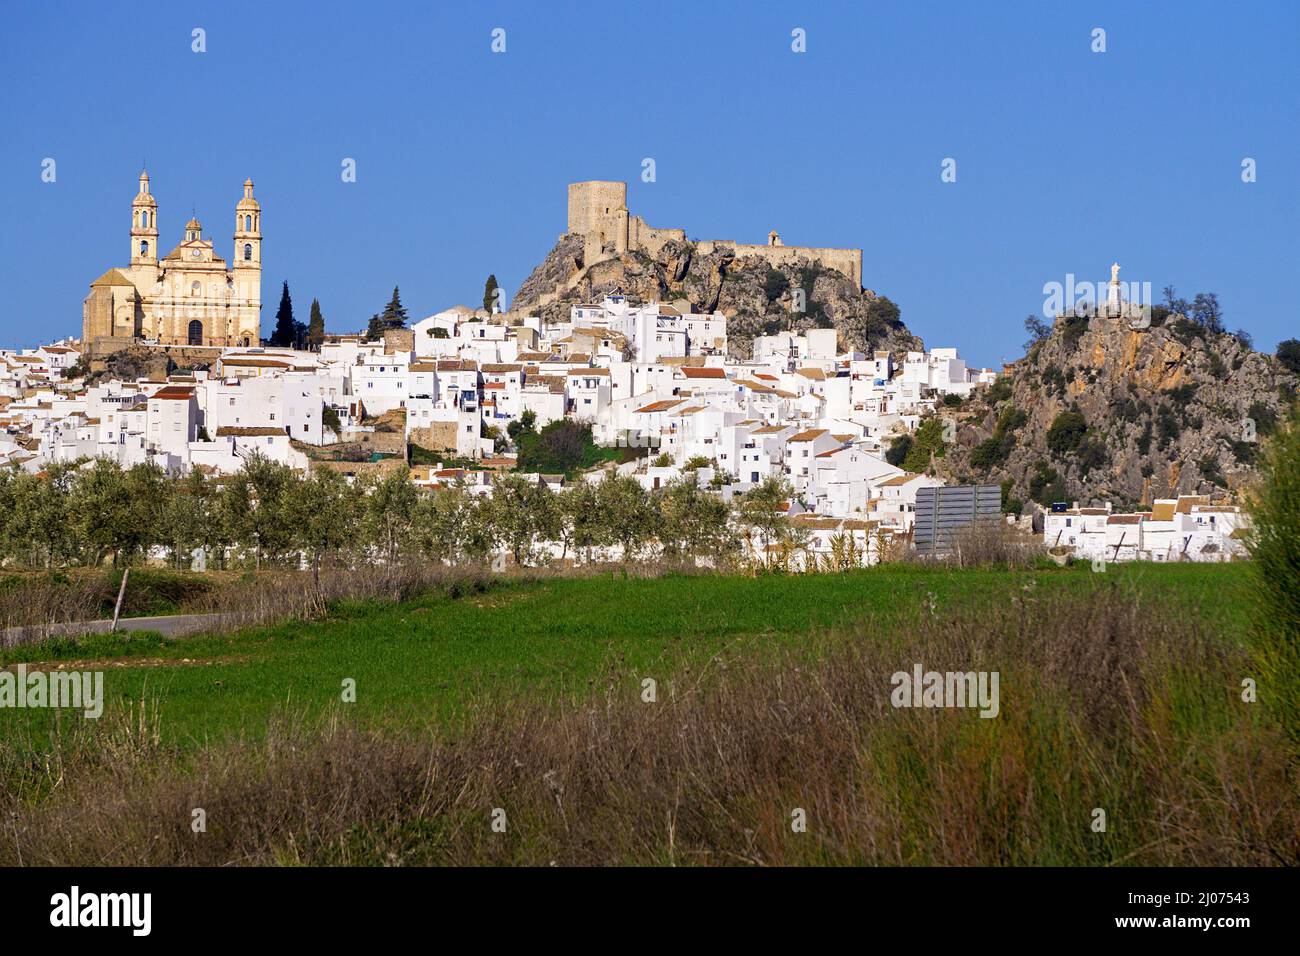 The white village Olvera with castle and church Nuestra Señora de la Encarnacion, Olvera, pueblo blanco, Cadiz province, Andalusia, Spain Stock Photo